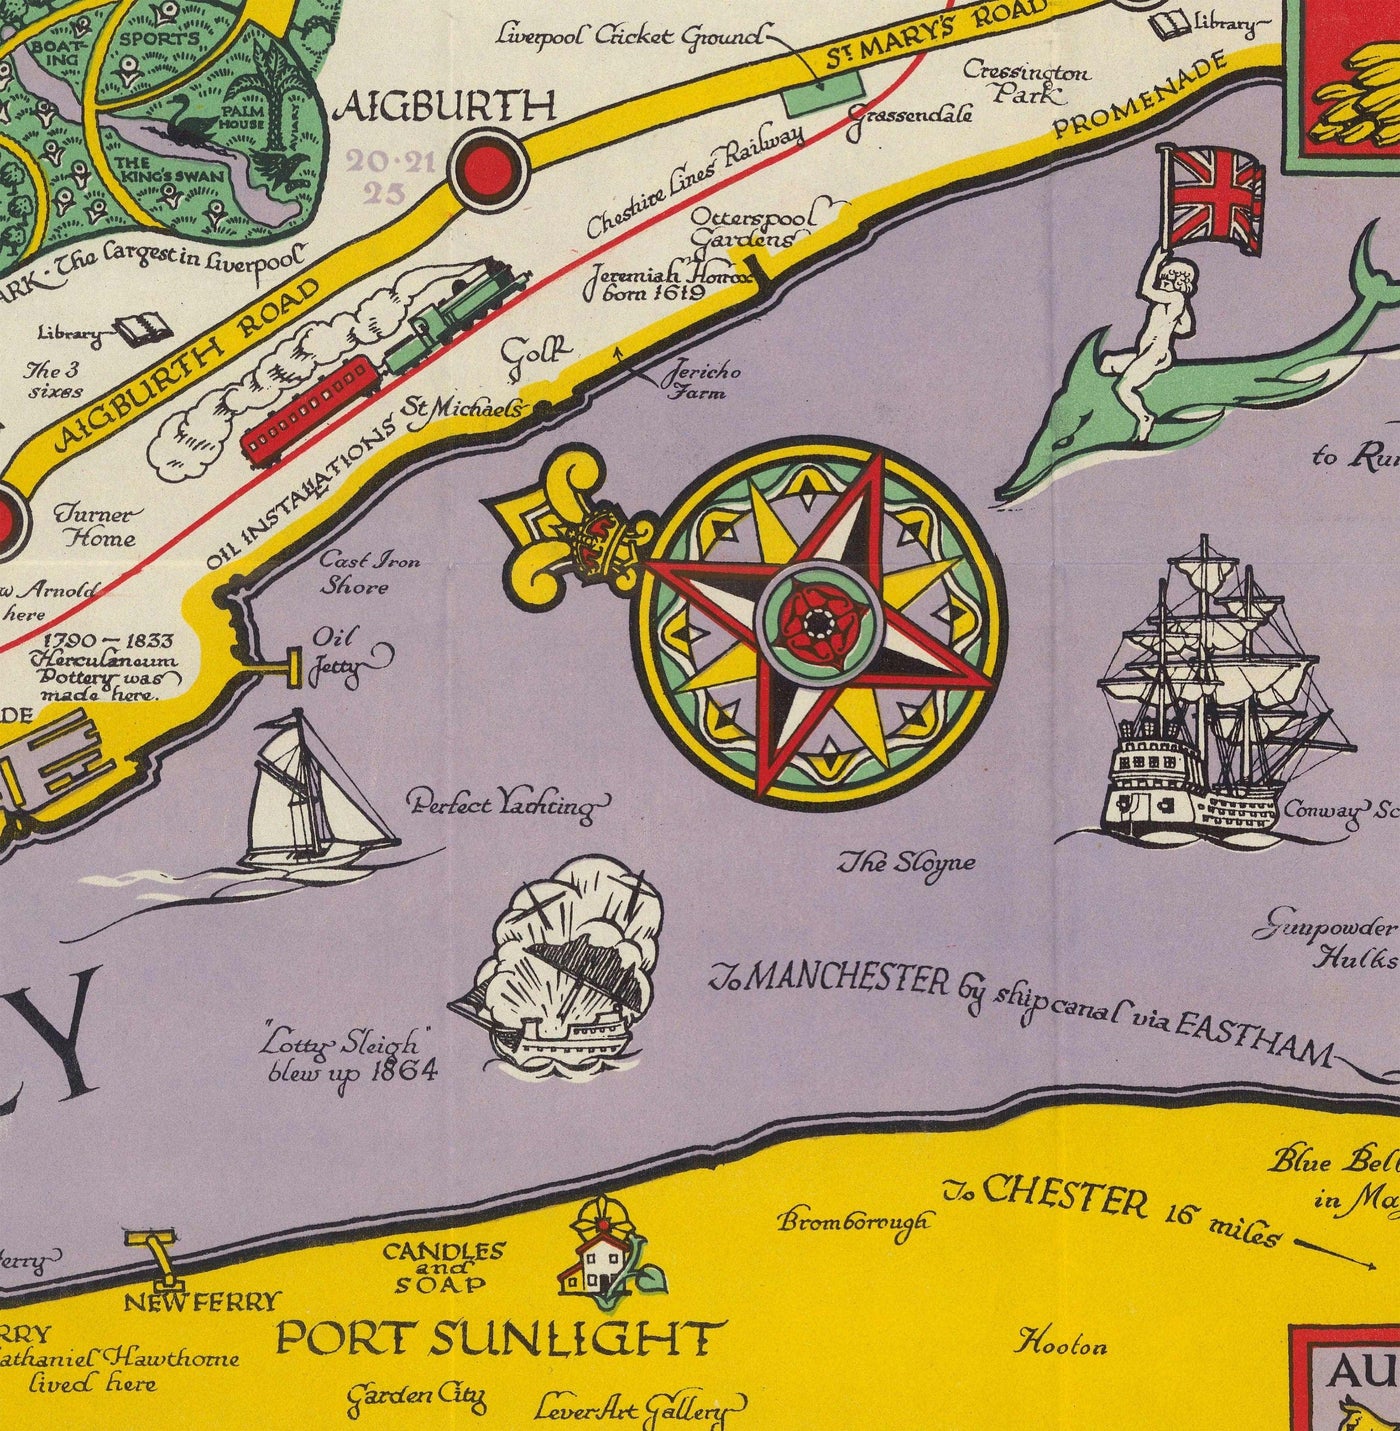 Viejo mapa de Liverpool, 1934 de GH Parry - Gráfico de la ciudad pictórica - Mersey, muelles, parques, edificios antiguos